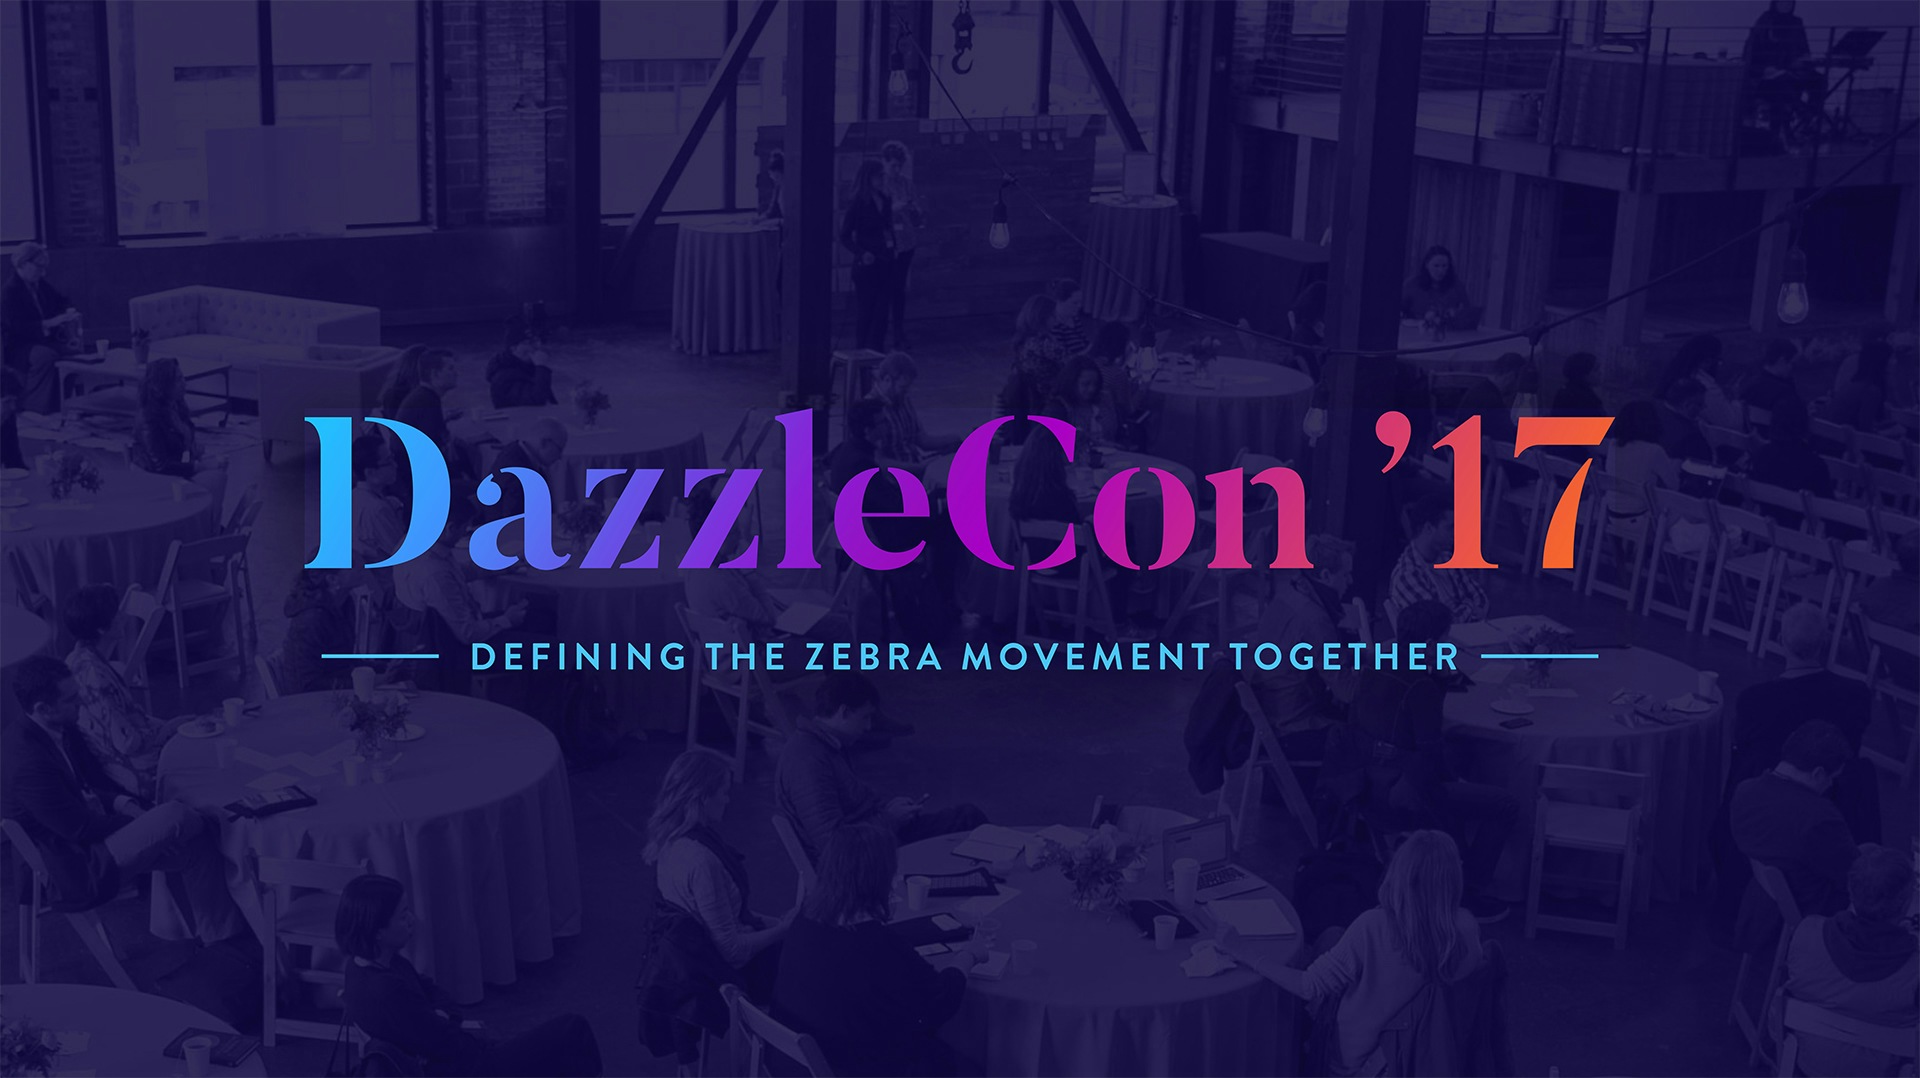 Marketing promo for DazzleCon 2017